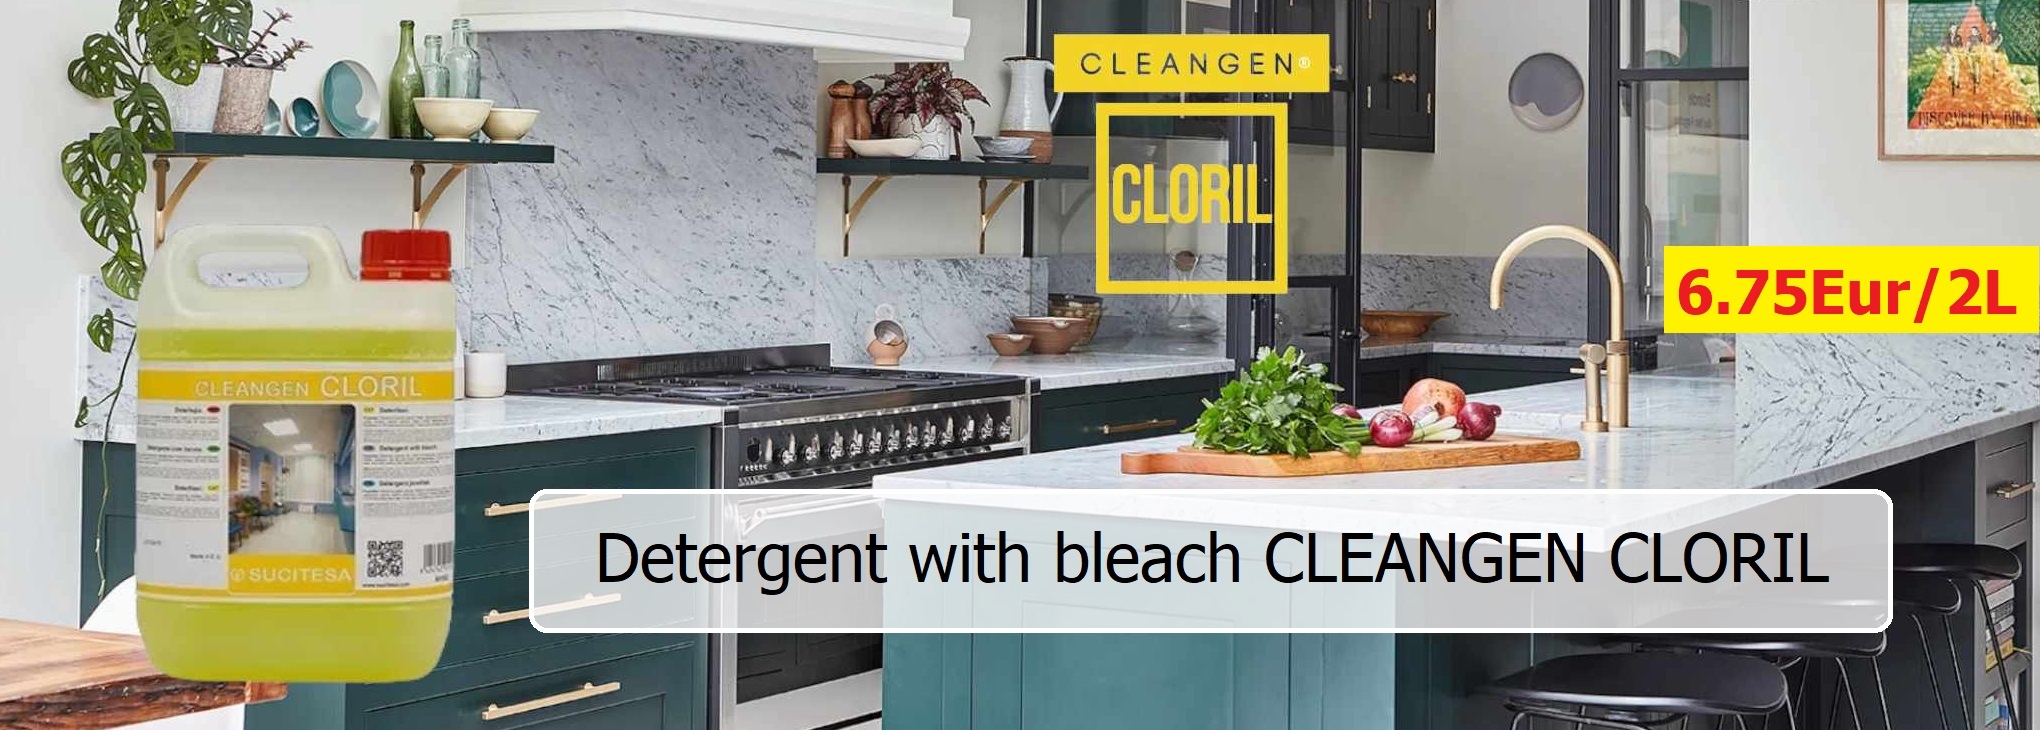 Detergent with bleach CLEANGEN CLORIL